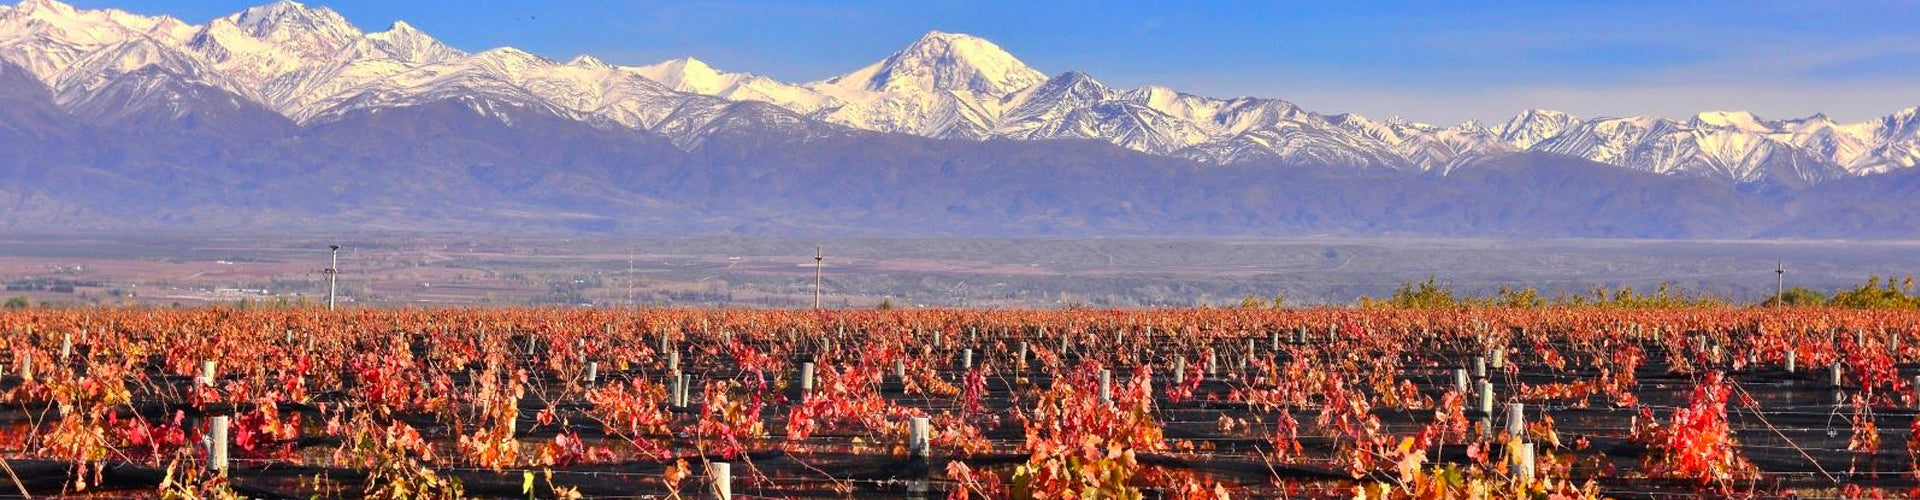 Masi Tupungato Vineyards in Mendoza's Uco Valley